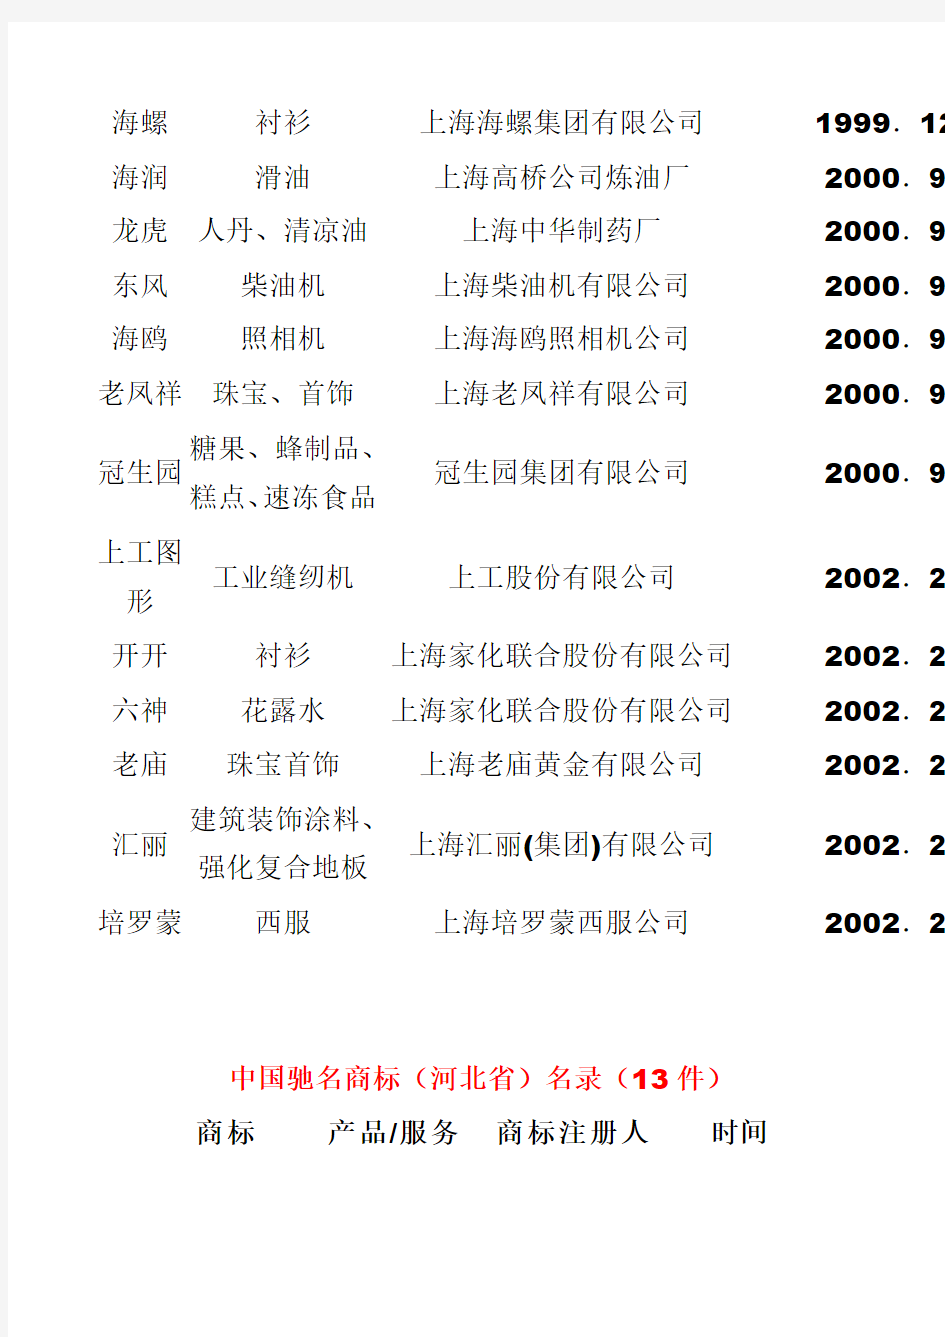 2003年以前293件认定各省中国驰名商标名单